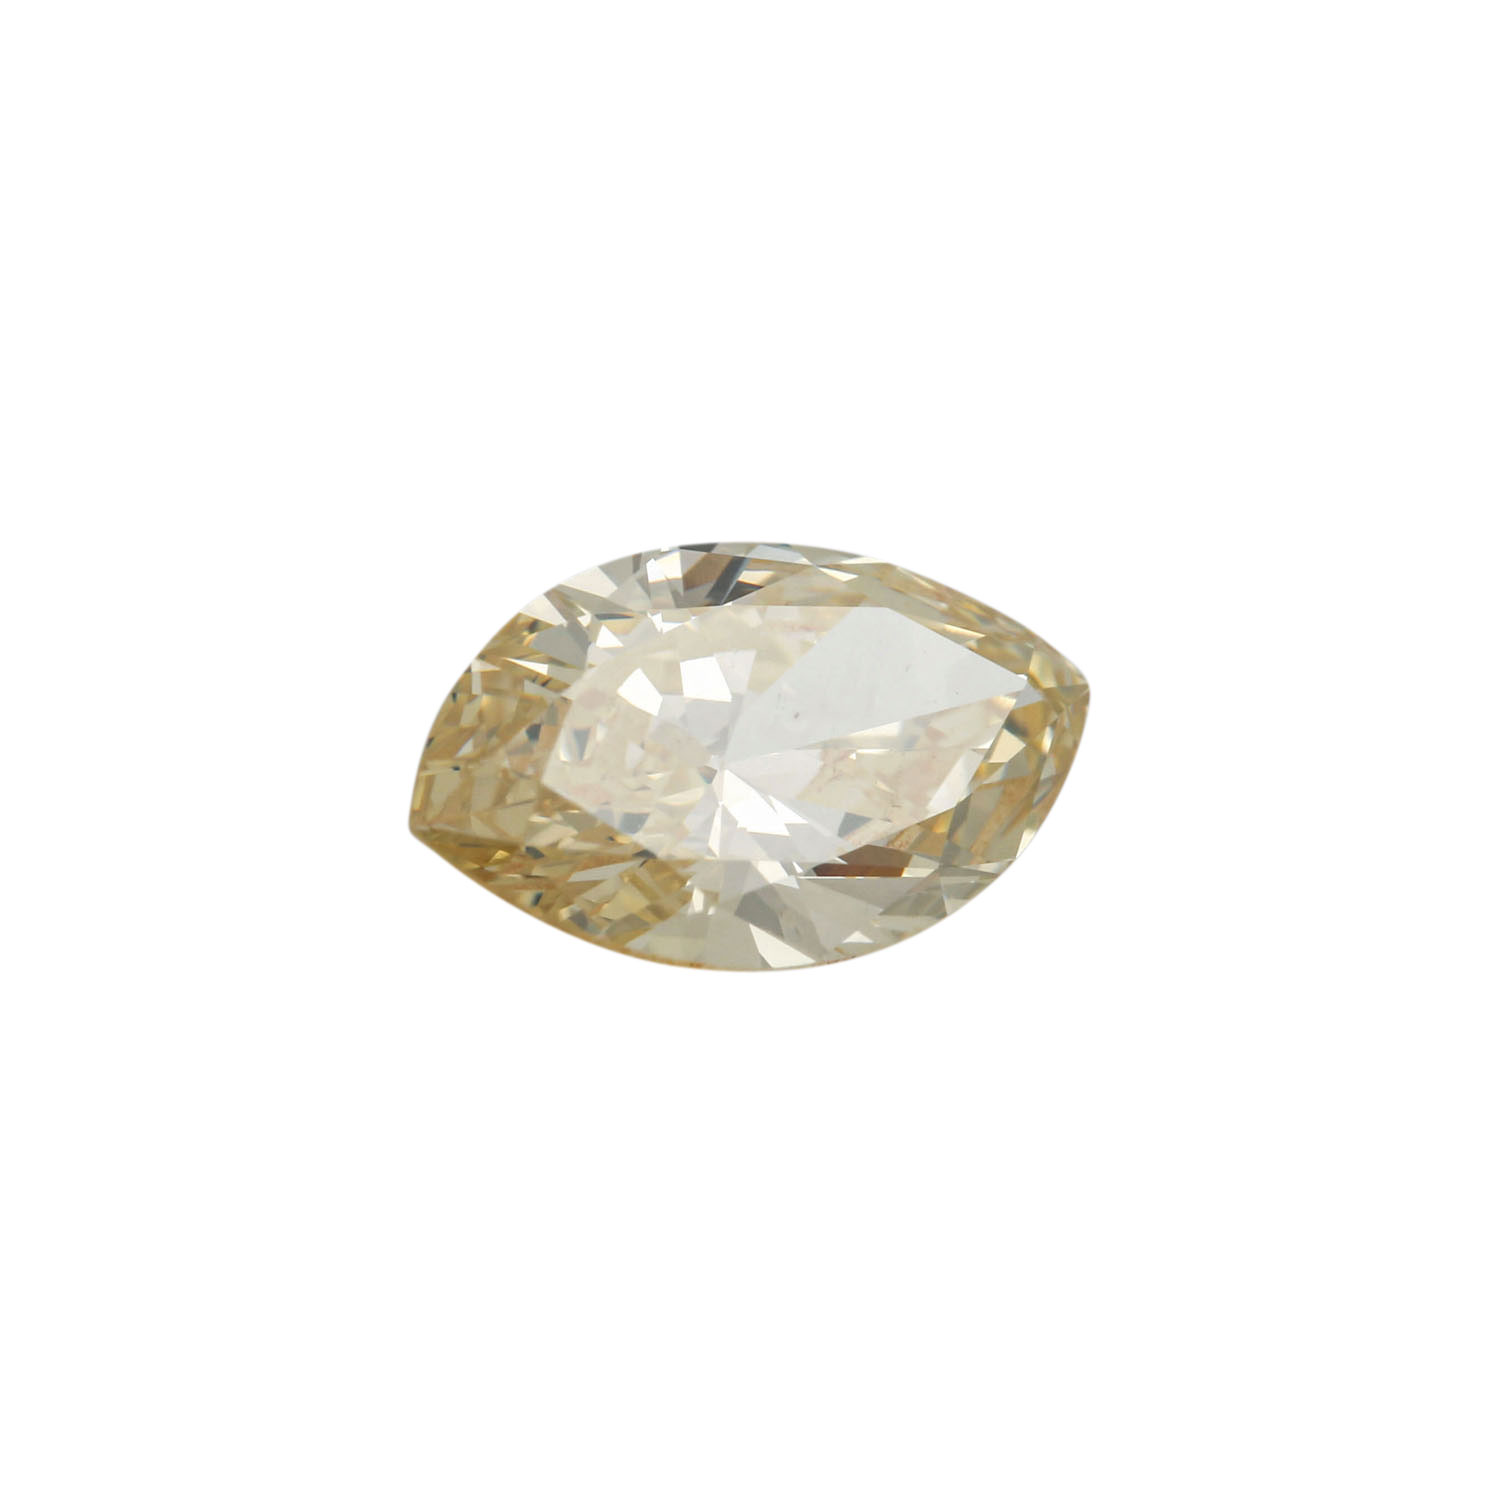 Loser Diamant im Navetteschliff von 1,63 ct, - Image 2 of 3